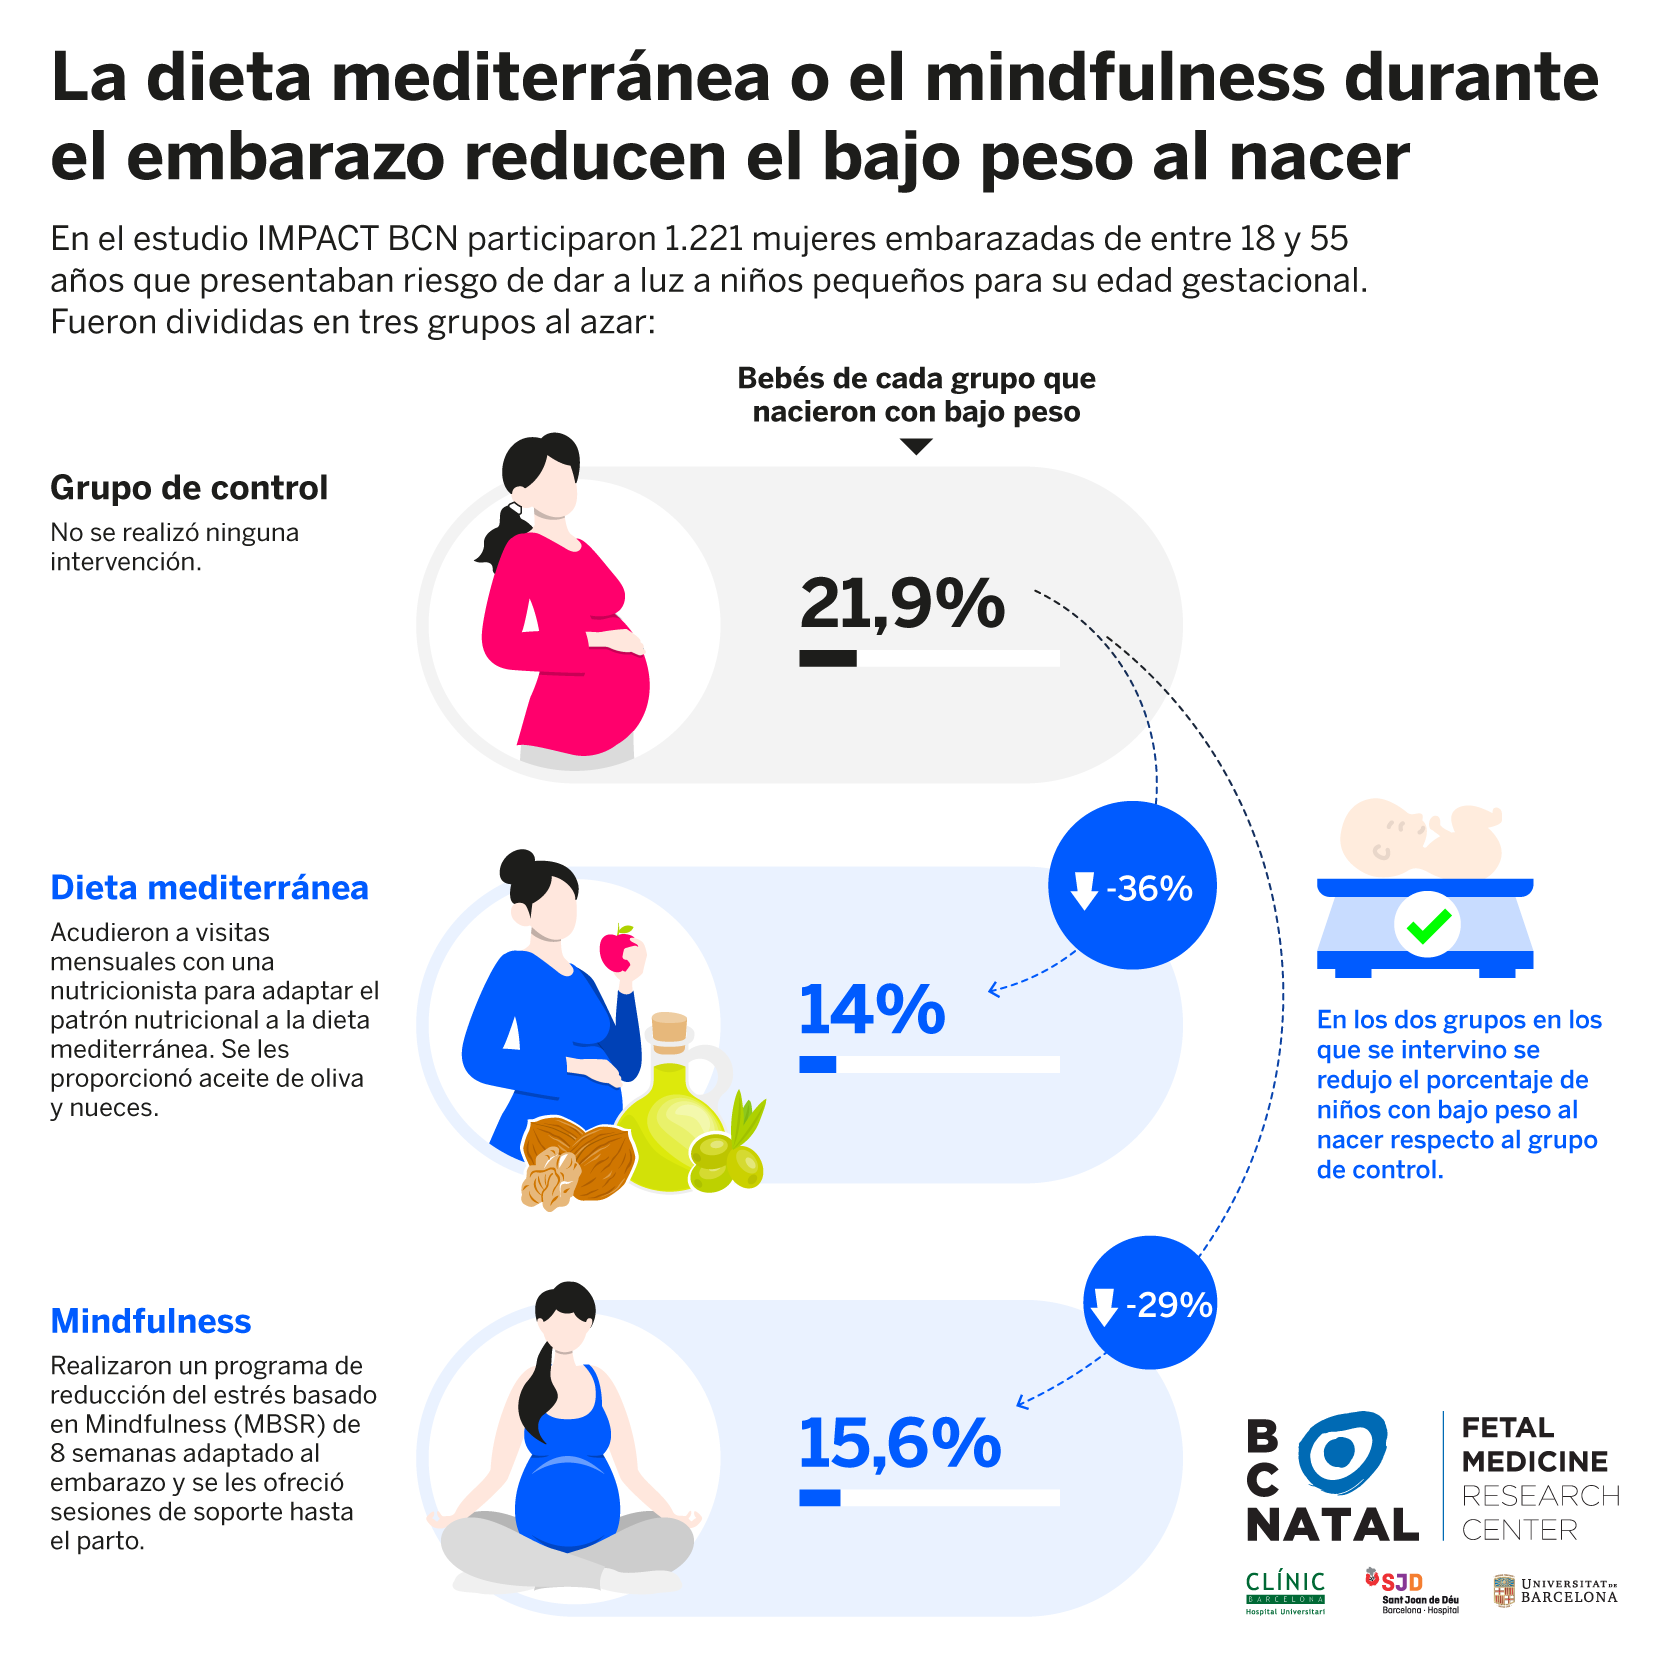 Infografía: La dieta mediterránea o el mindfulness en el embarazo reducen el riesgo de tener un bebé con bajo peso.